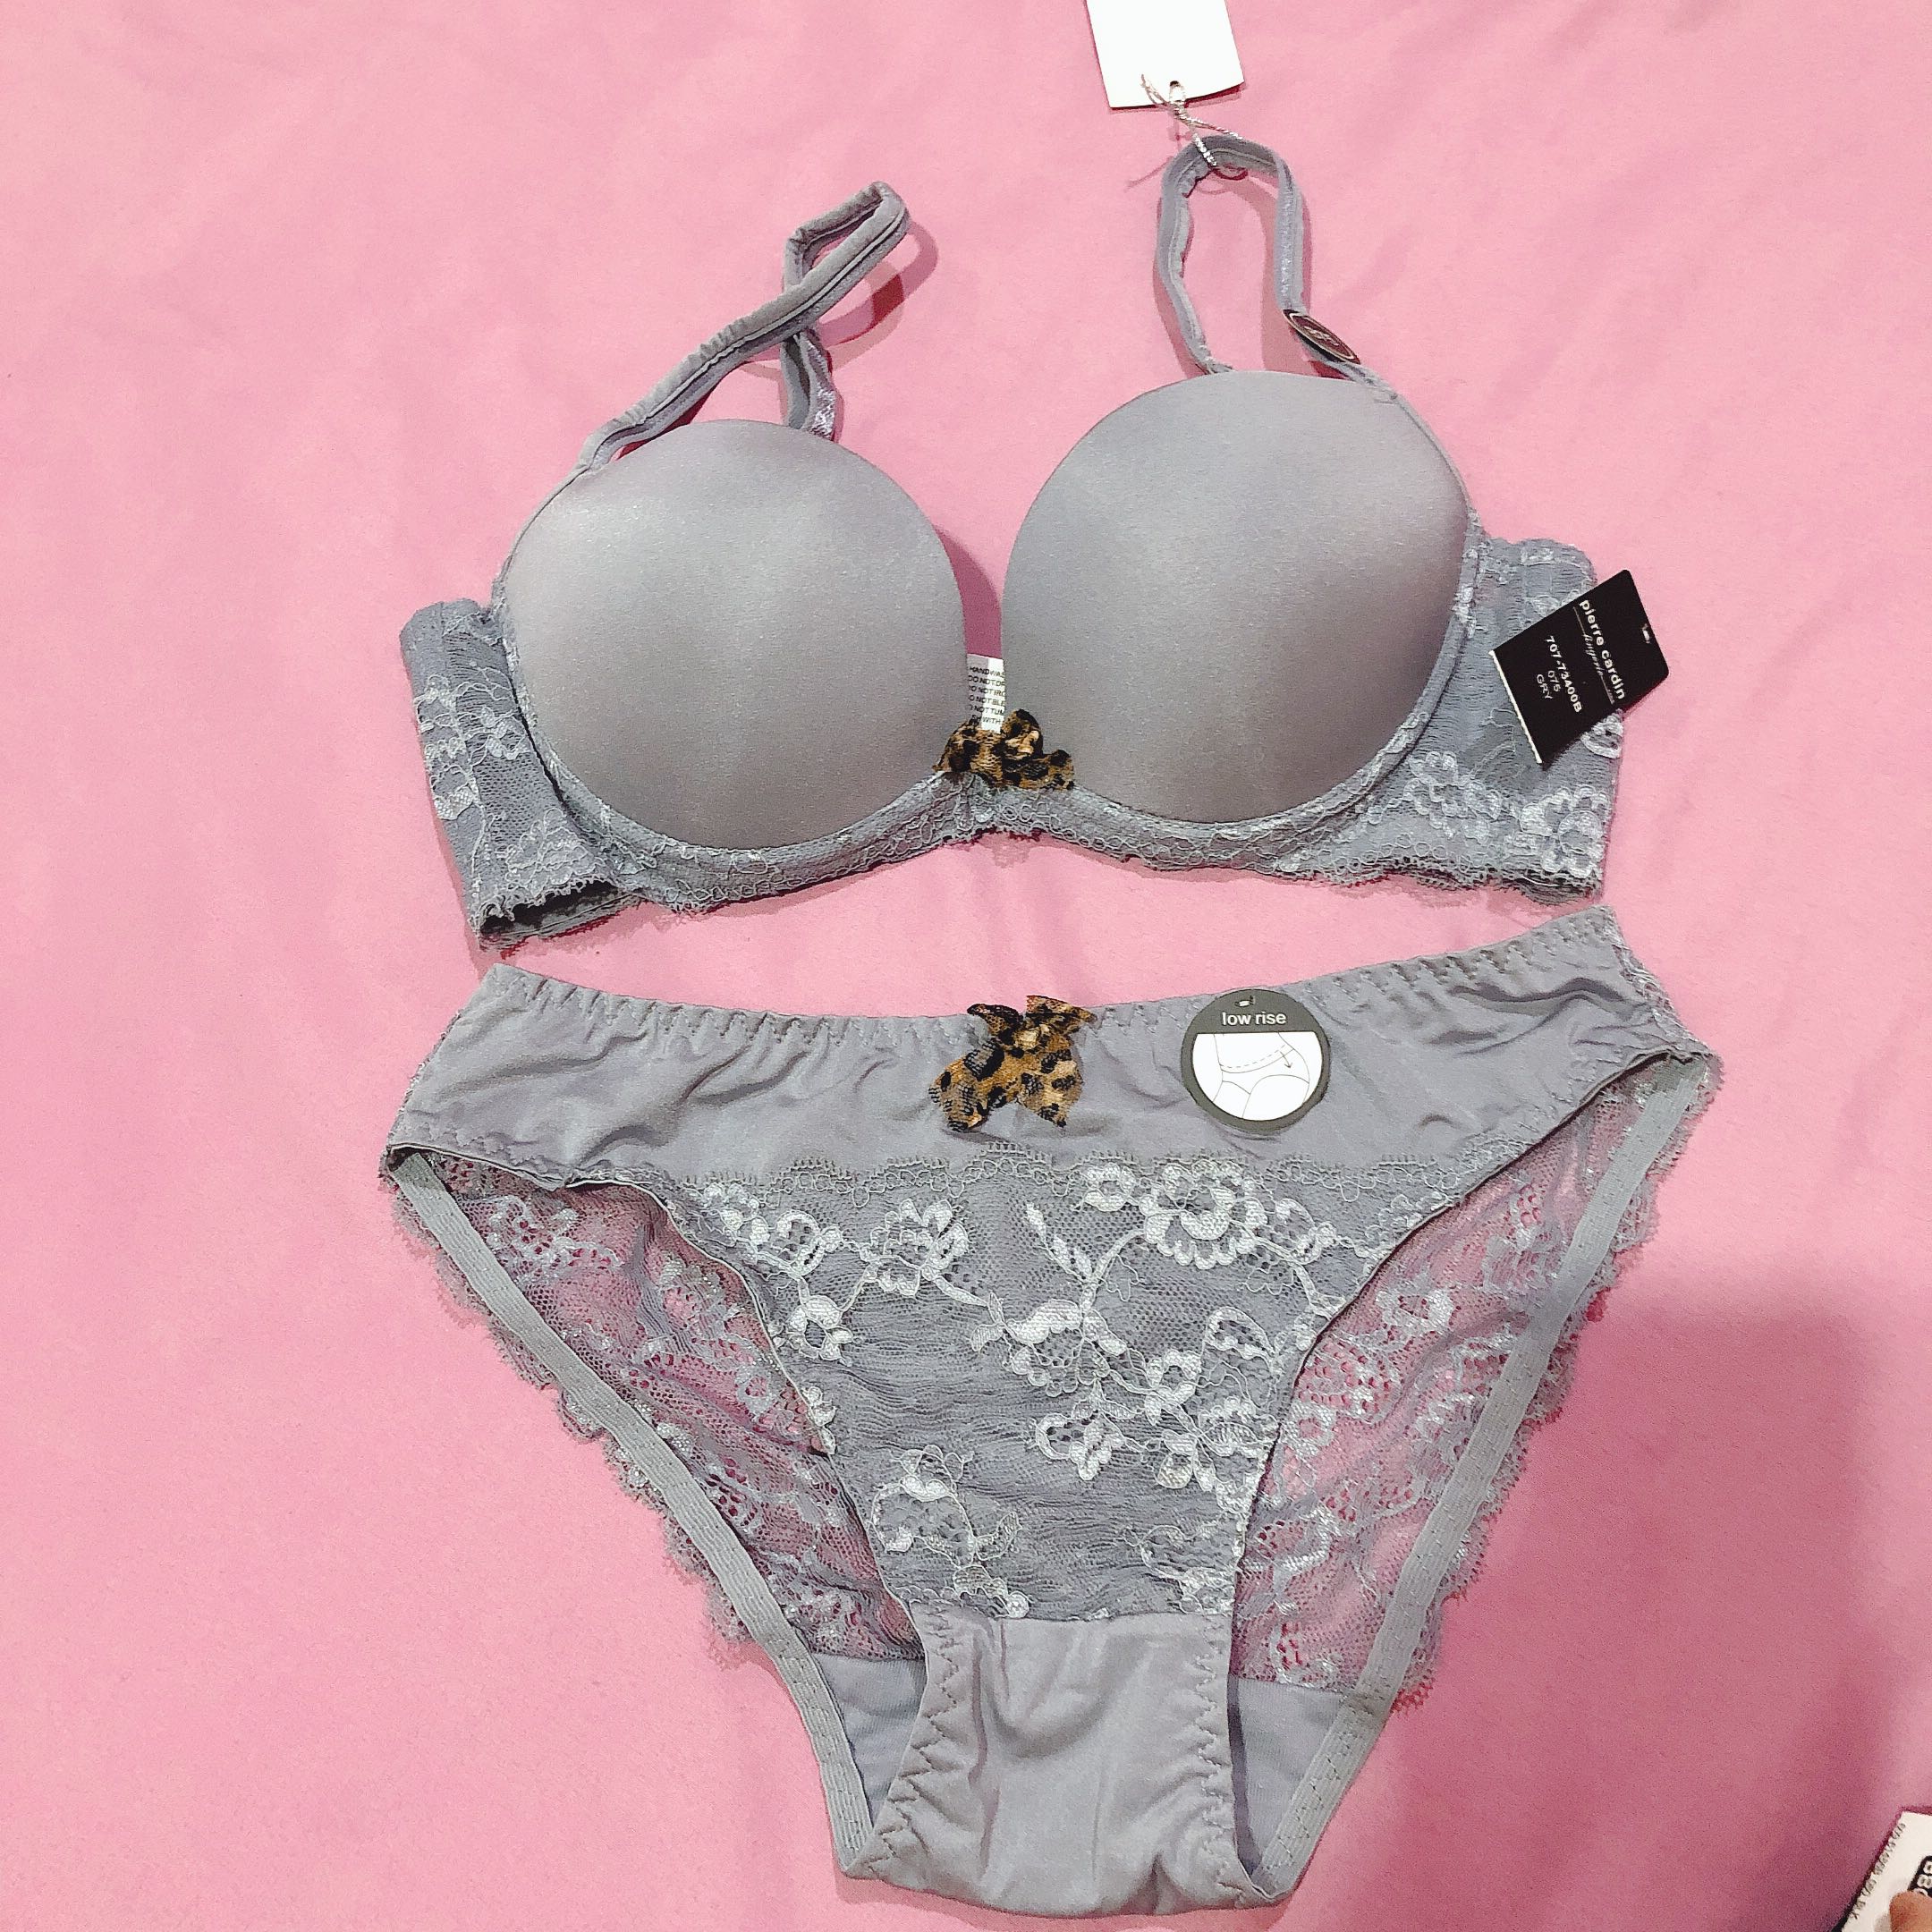 Pierre Cardin lingerie bra set, Women's Fashion, New Undergarments